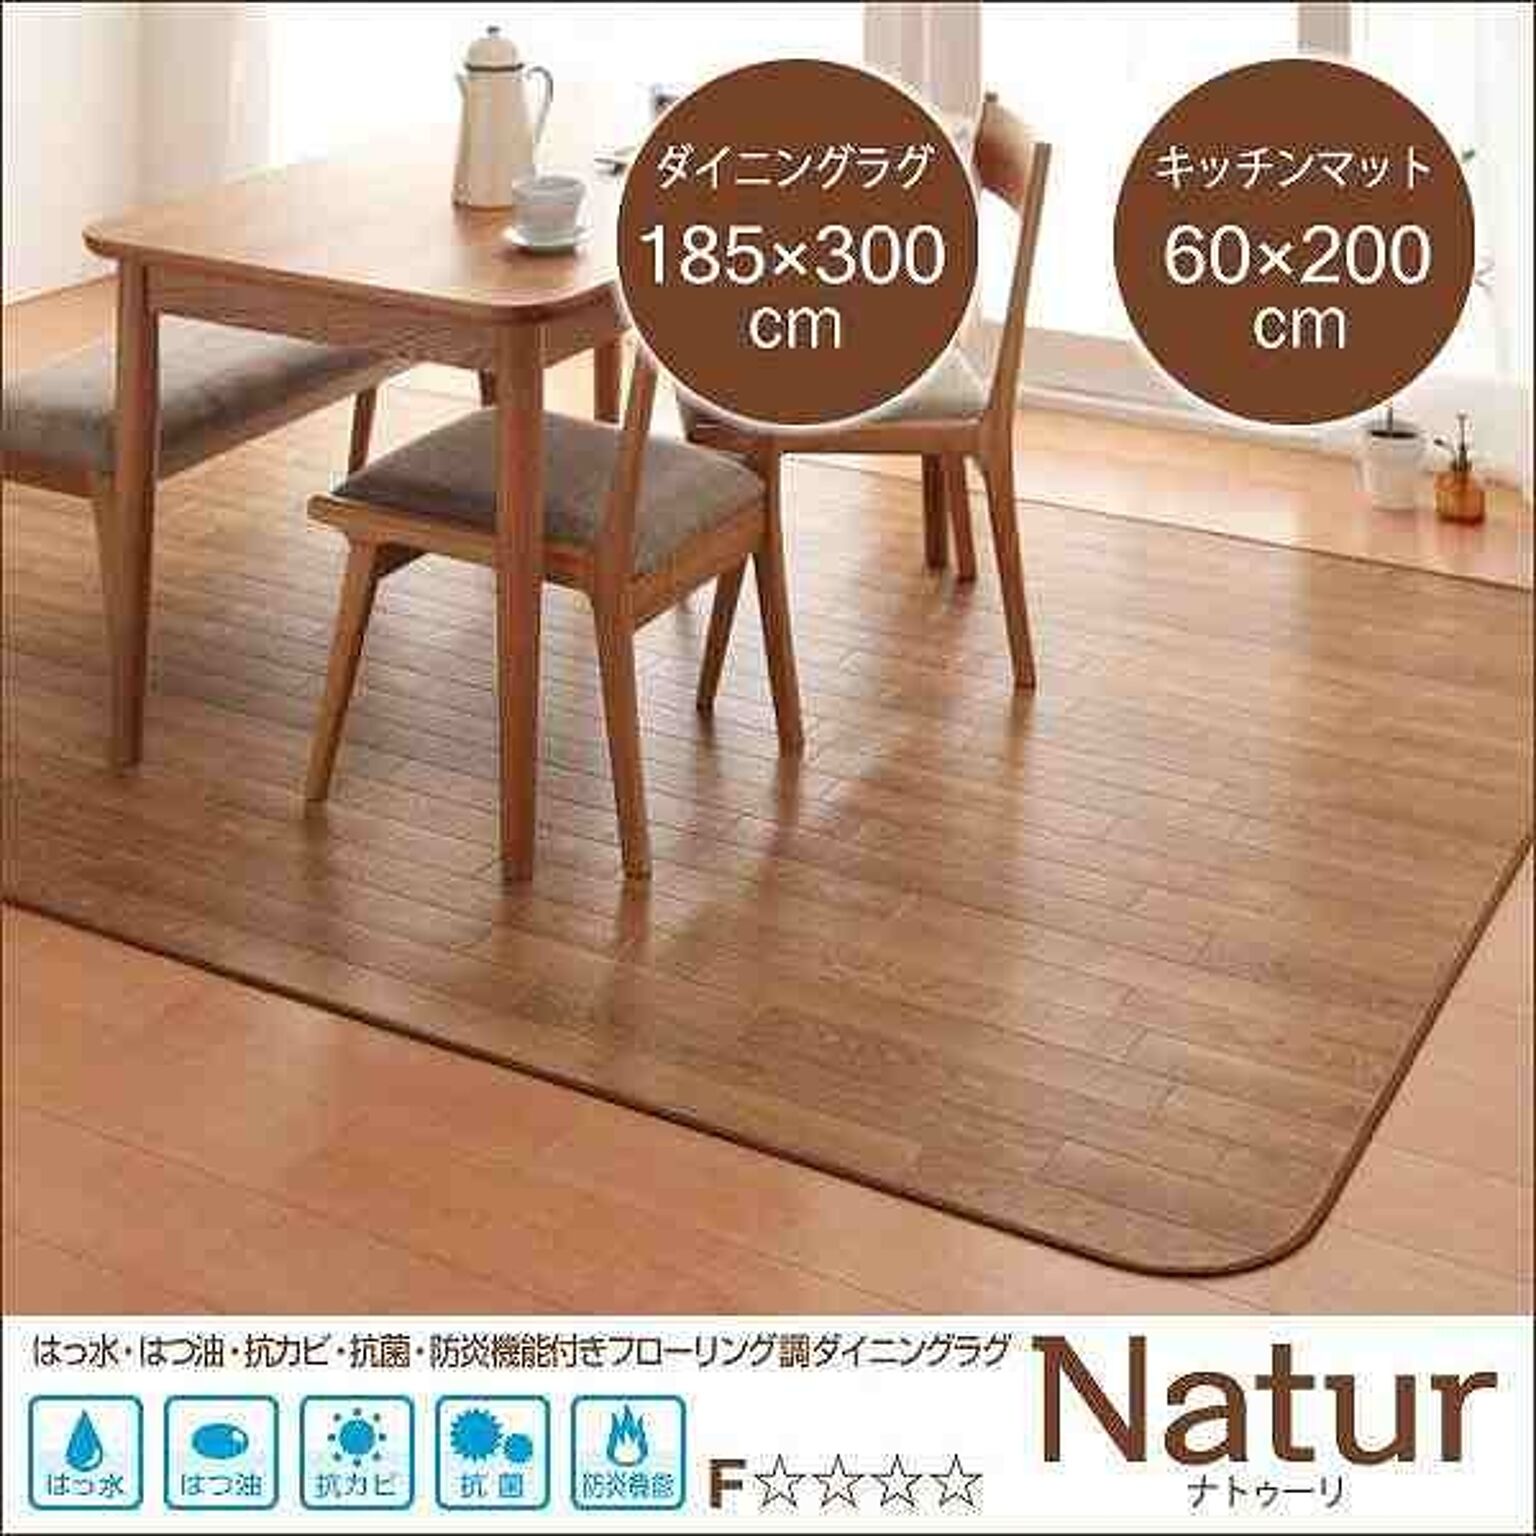 Natur ナトゥーリ ダイニングラグ&キッチンマット 185×300cm+60×200cm